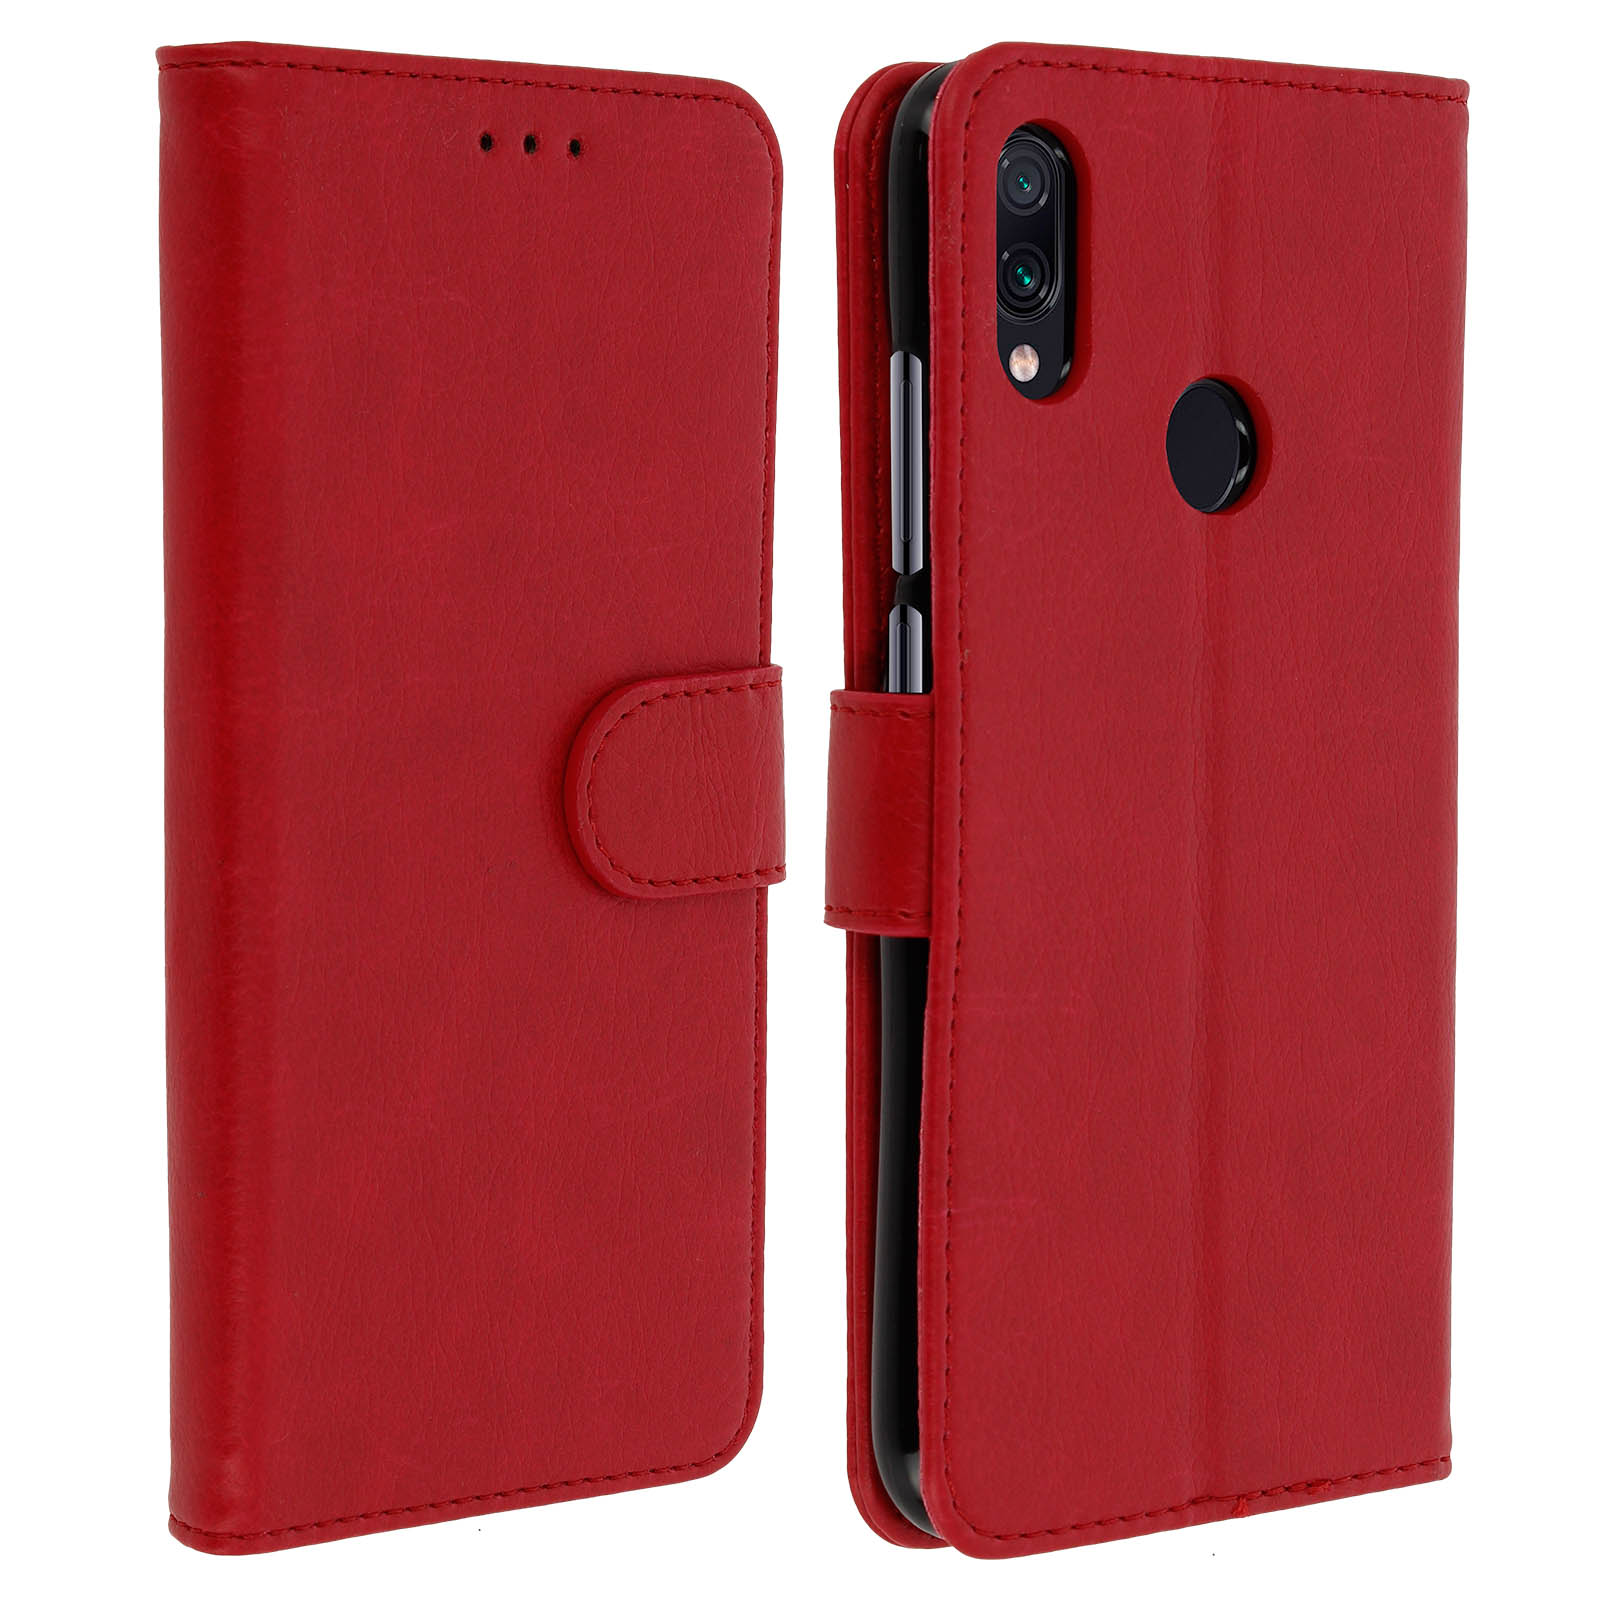 Chester AVIZAR Xiaomi, 7, Rot Redmi Series, Bookcover, Note